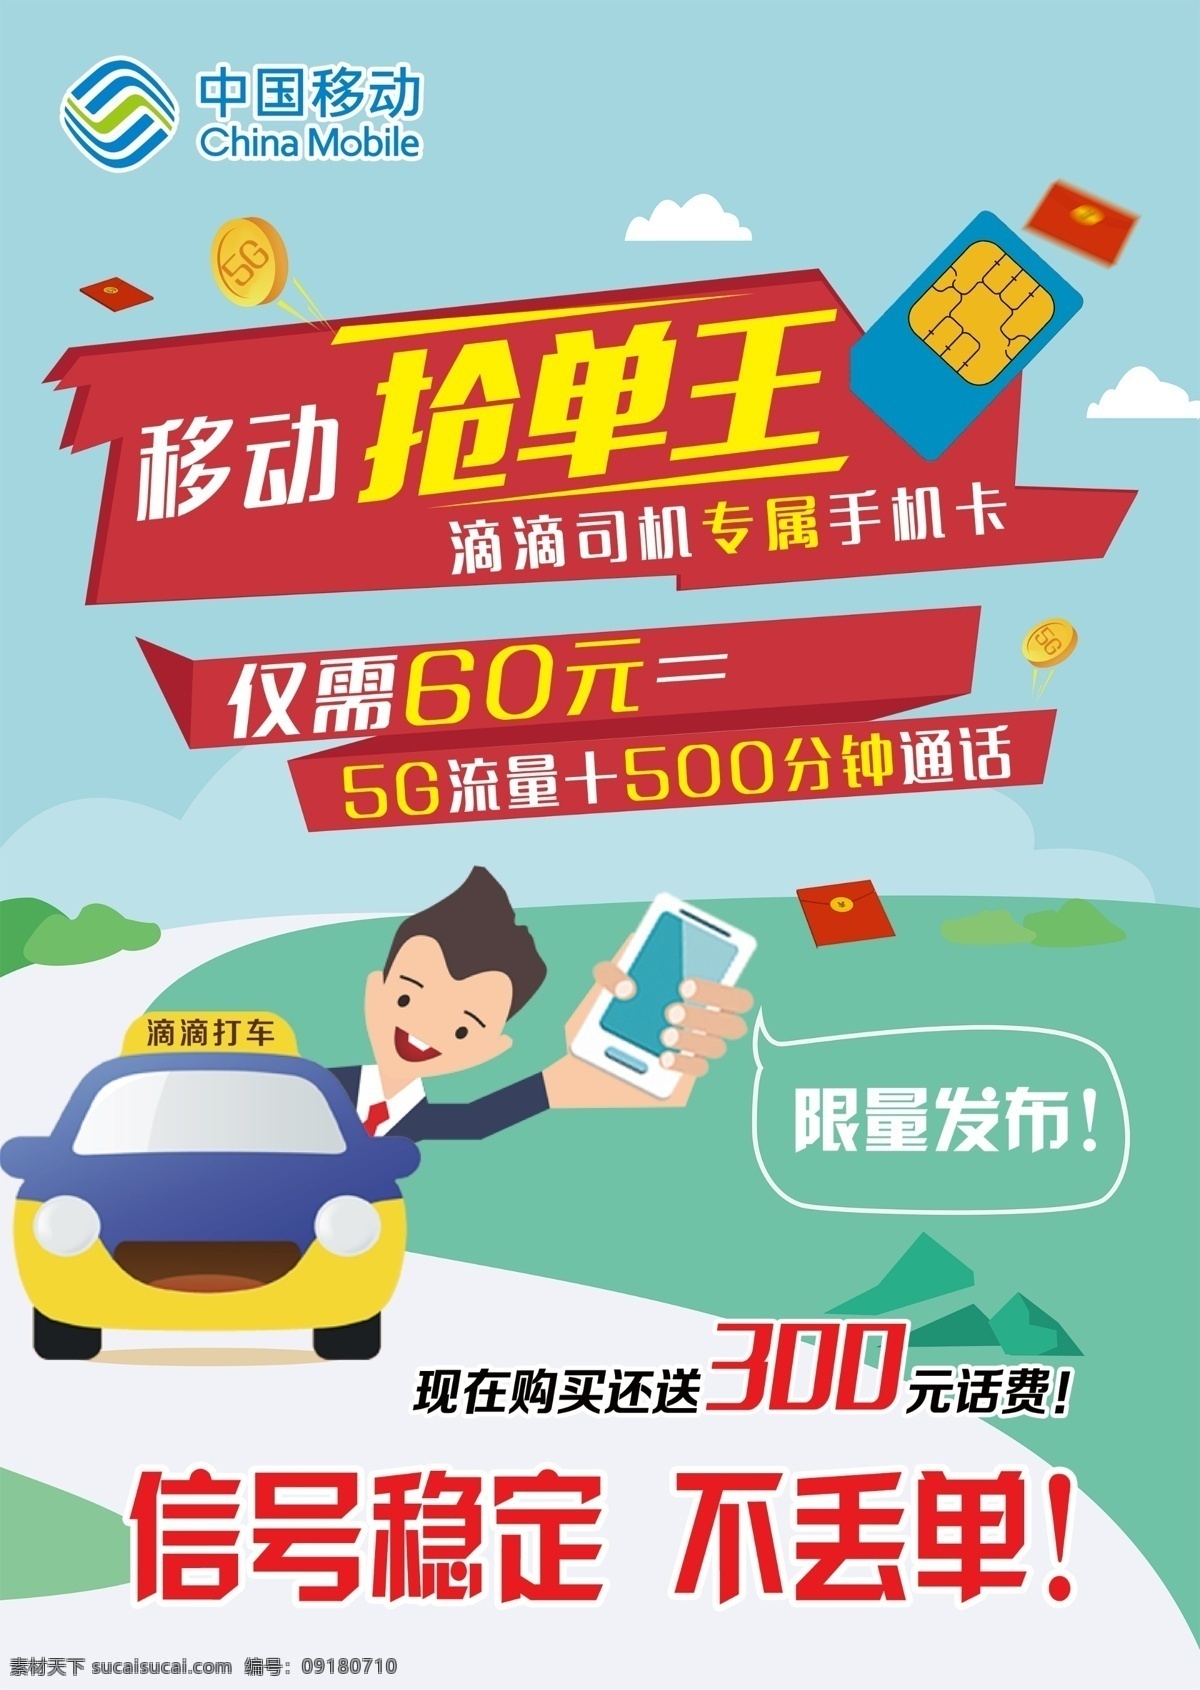 中国移动 抢单王 手机卡 金币 红包 滴滴打车 信号稳定 不丢单 限量发布 出租车